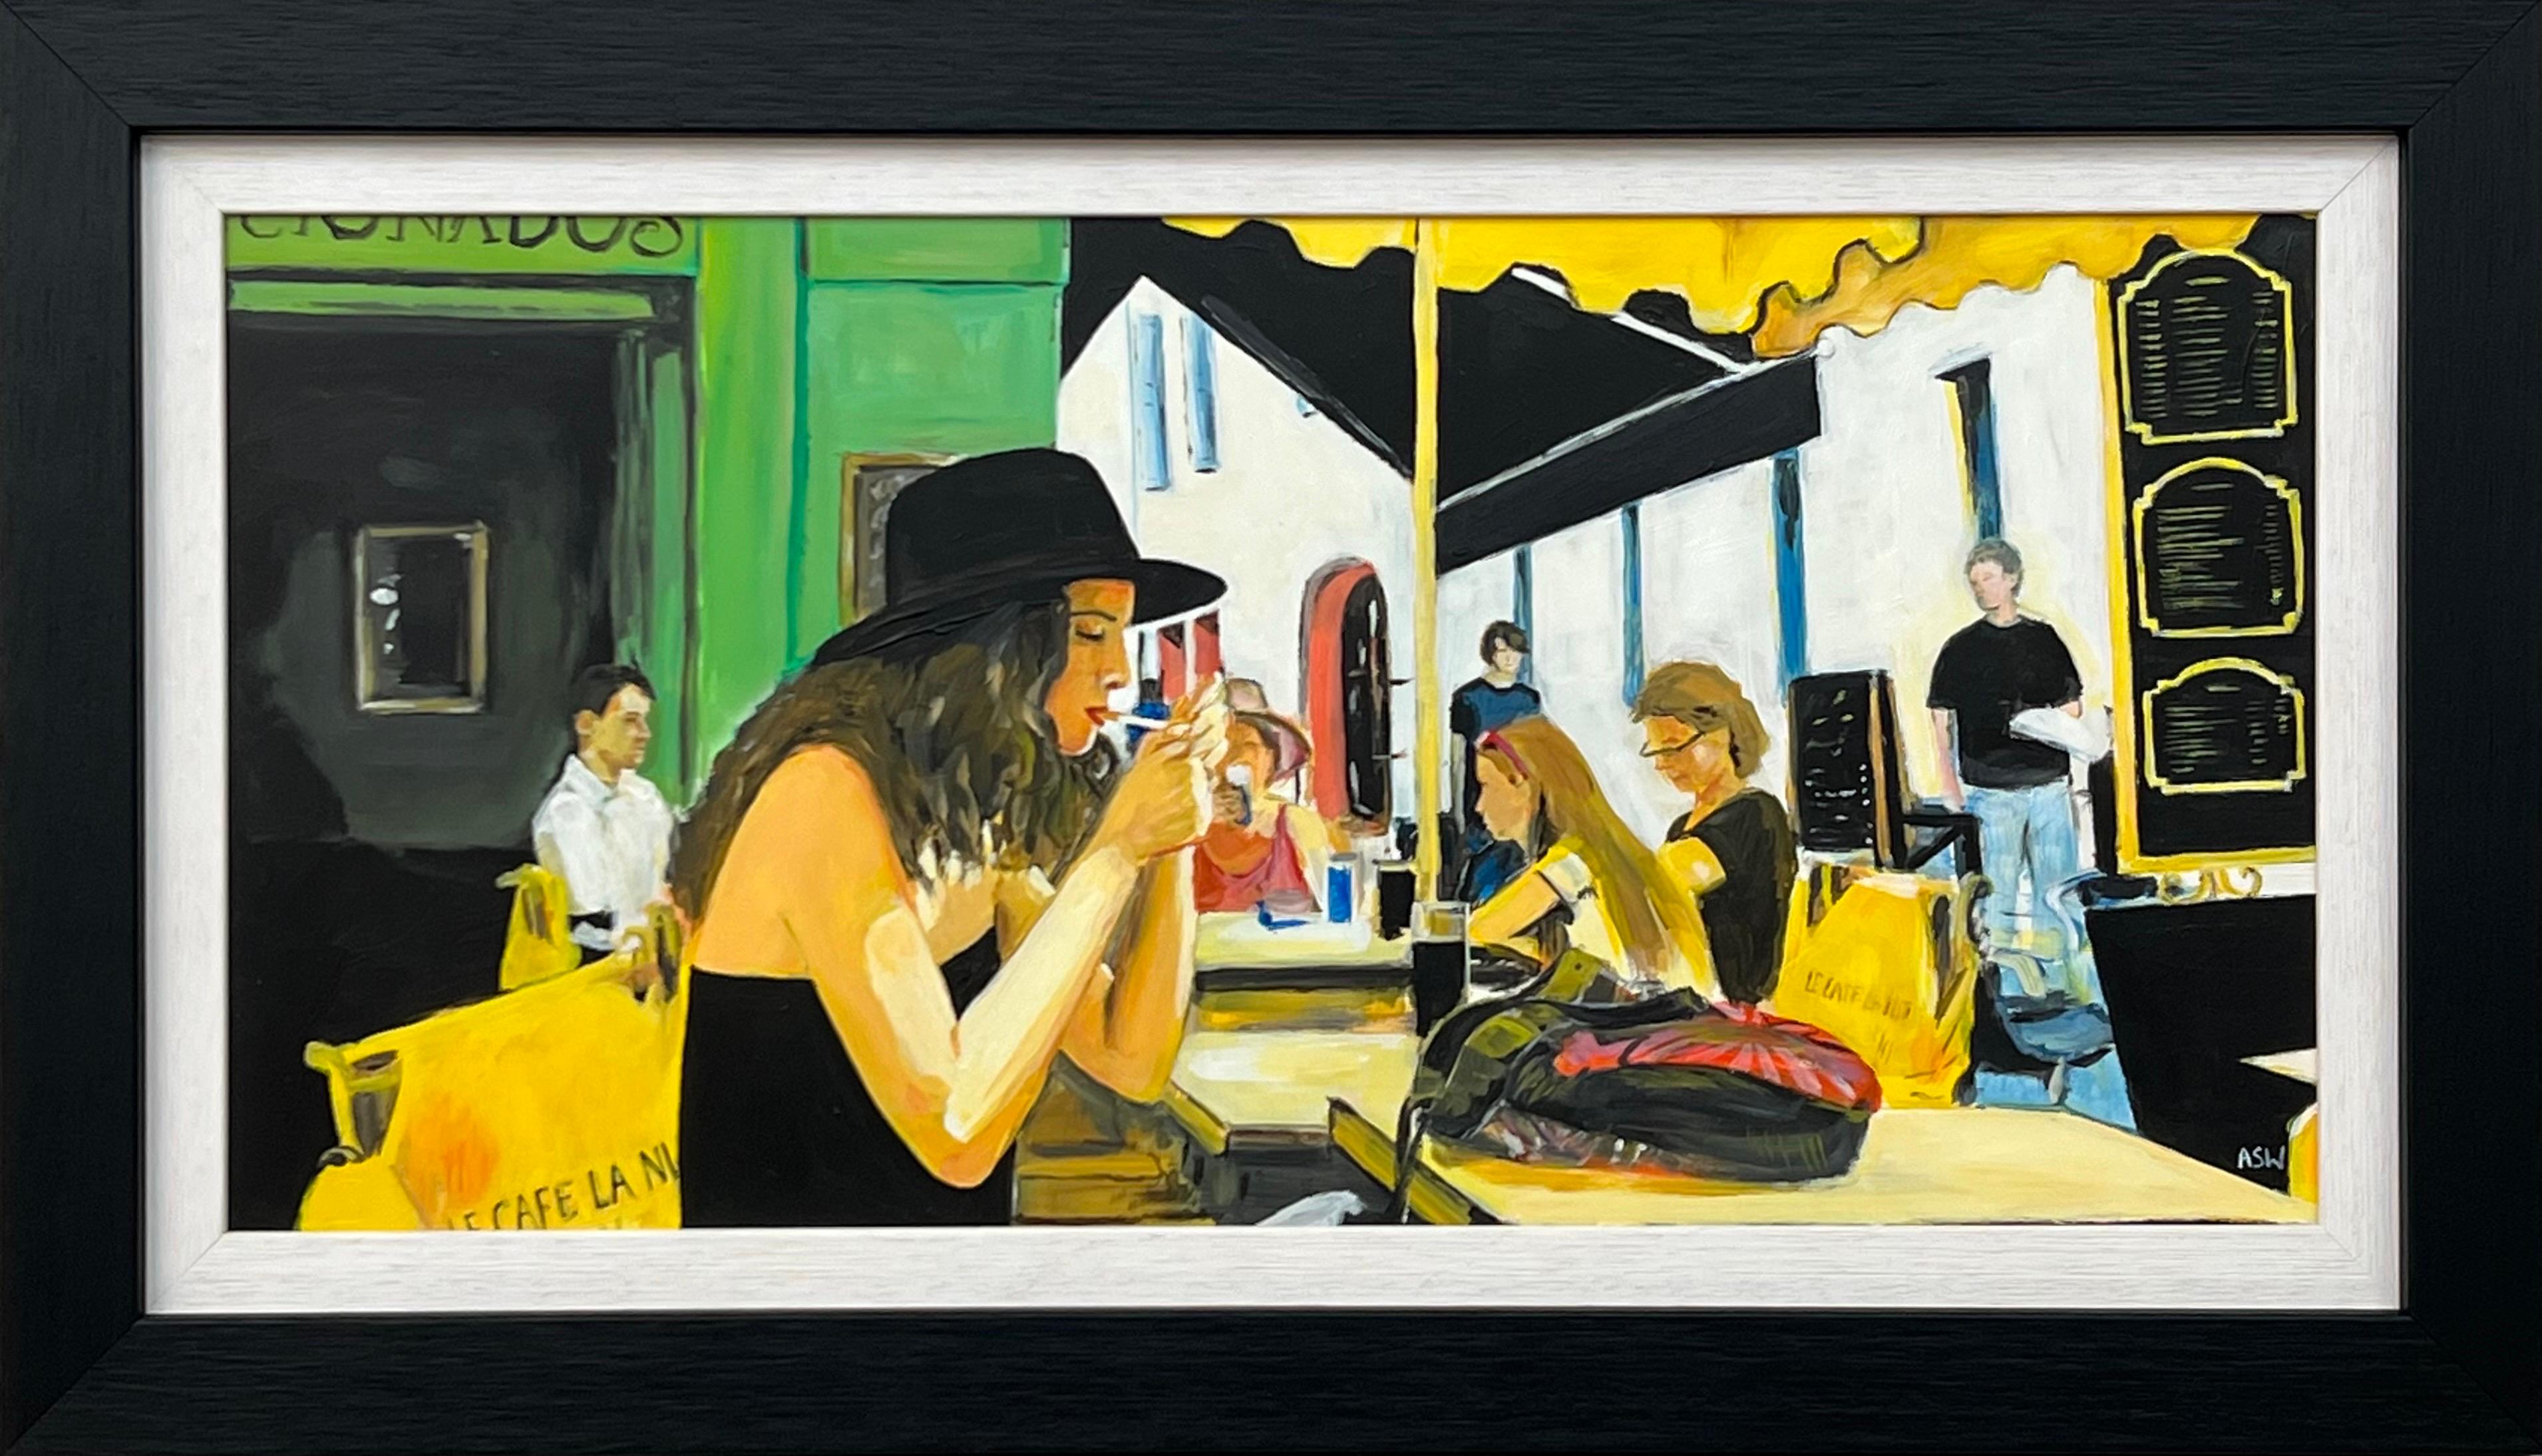 Frau im Rauch at Le Cafe La Nuit in Arles, Frankreich, von zeitgenössischer britischer Künstlerin